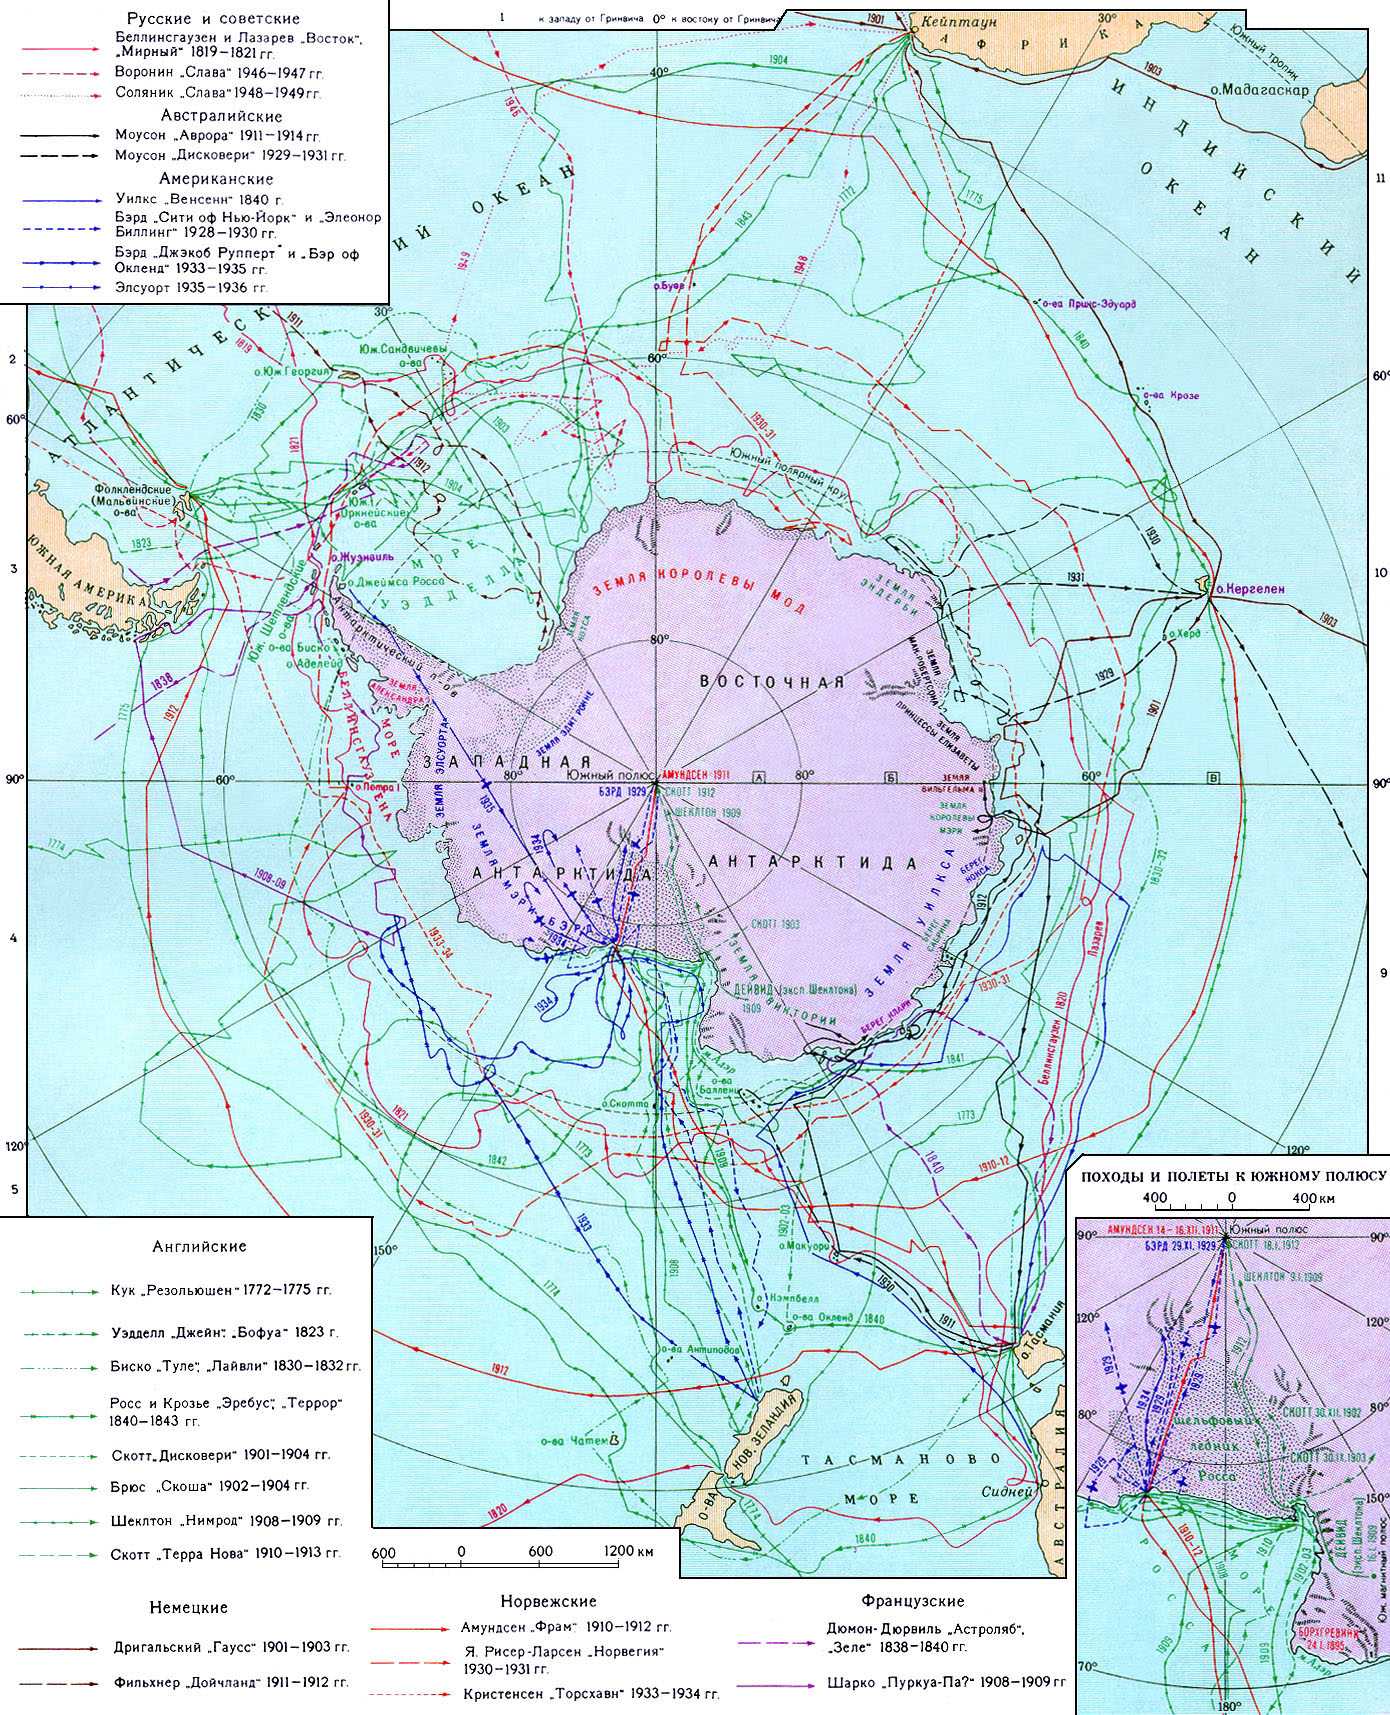 Антарктика карта мира